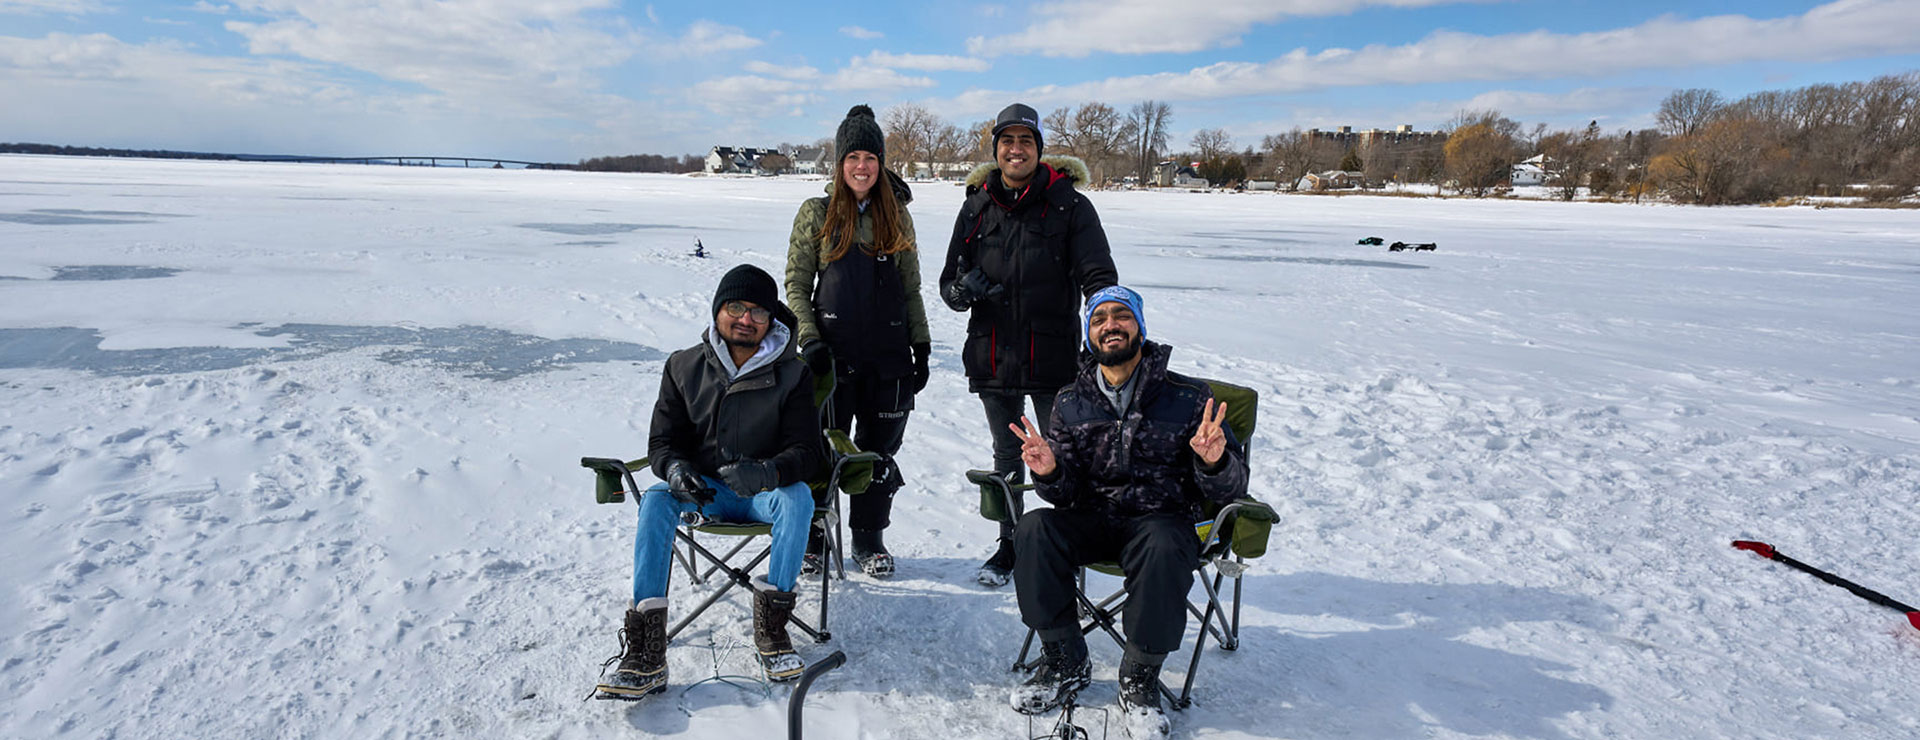 Ma première pêche sur glace – une expérience internationale